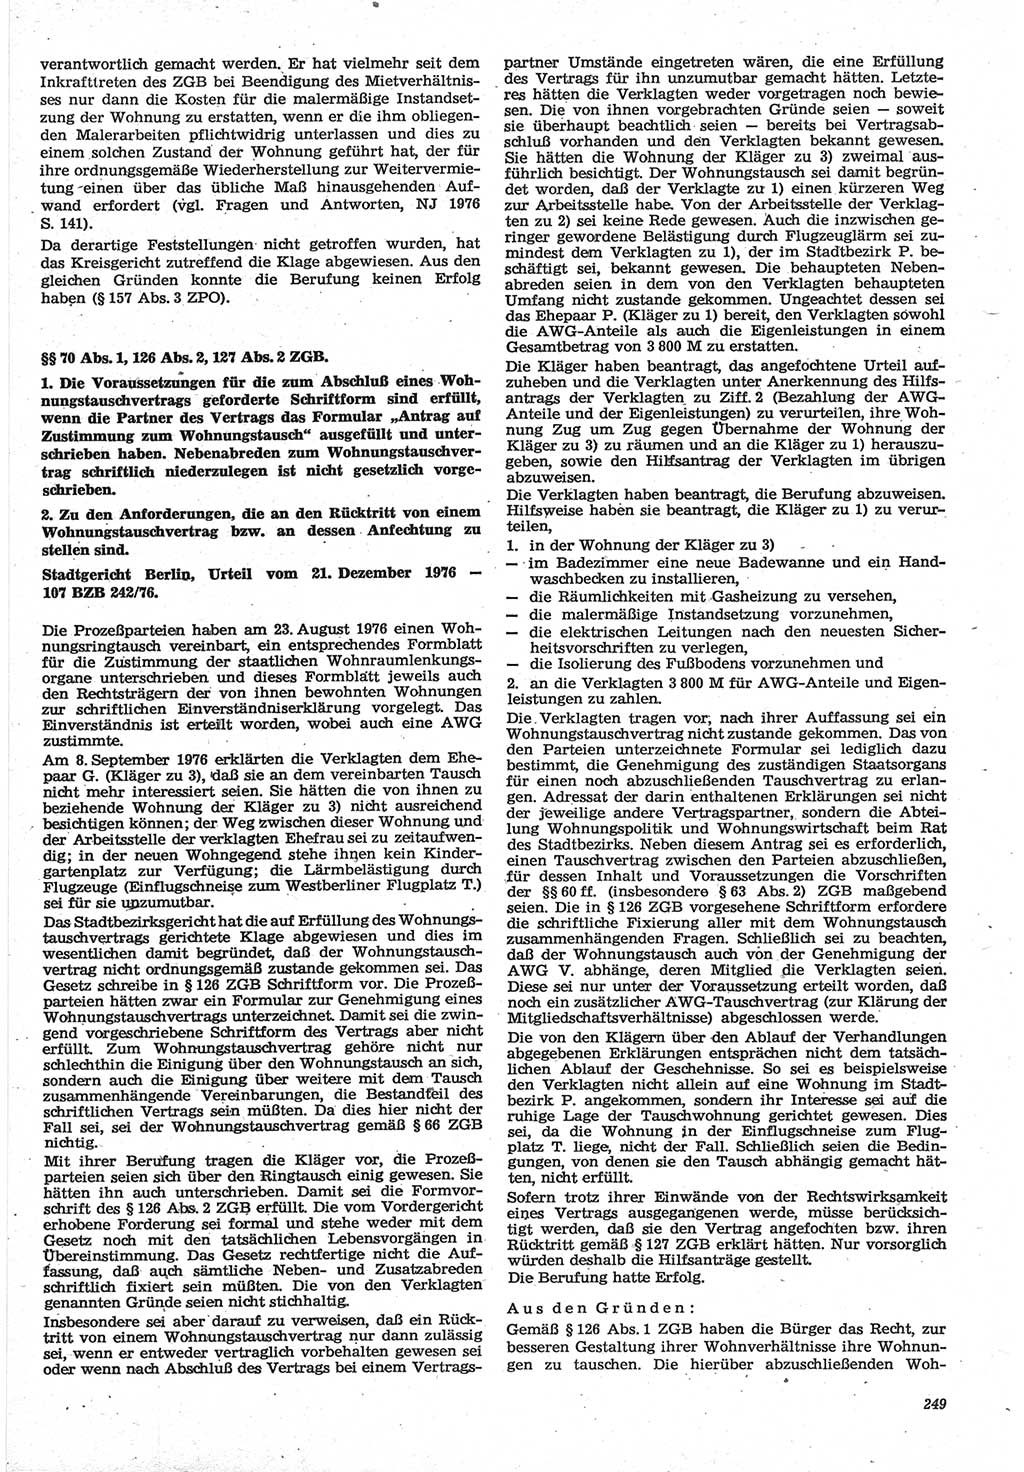 Neue Justiz (NJ), Zeitschrift für Recht und Rechtswissenschaft-Zeitschrift, sozialistisches Recht und Gesetzlichkeit, 31. Jahrgang 1977, Seite 249 (NJ DDR 1977, S. 249)